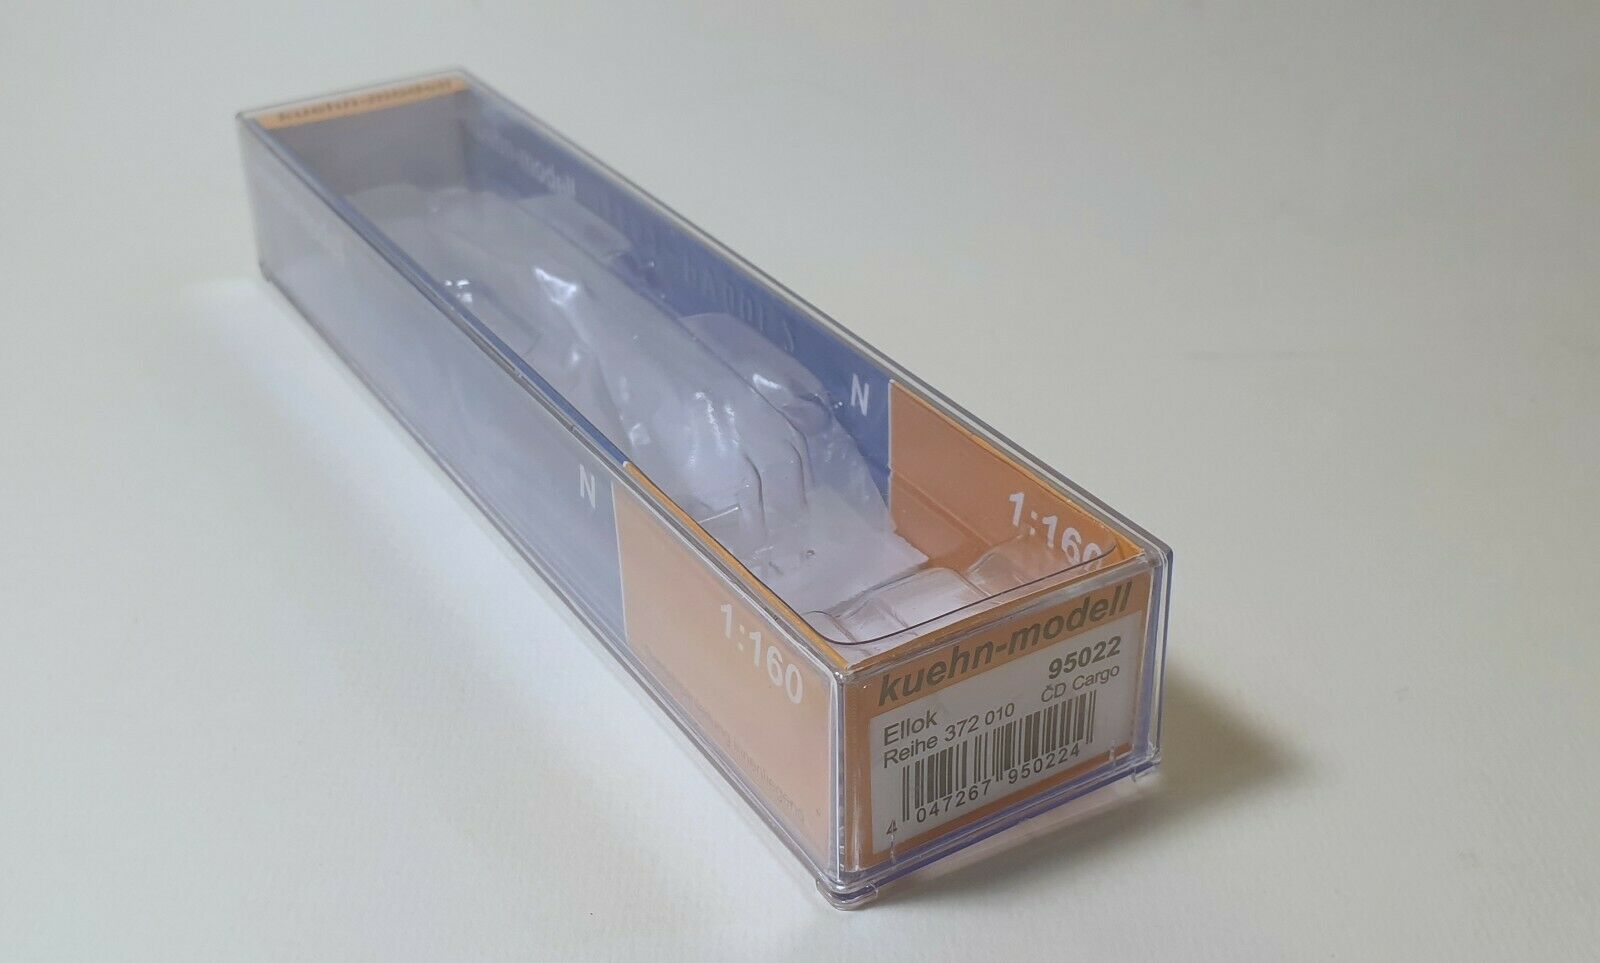 Kuehn-modell Box For Br 180 1:160